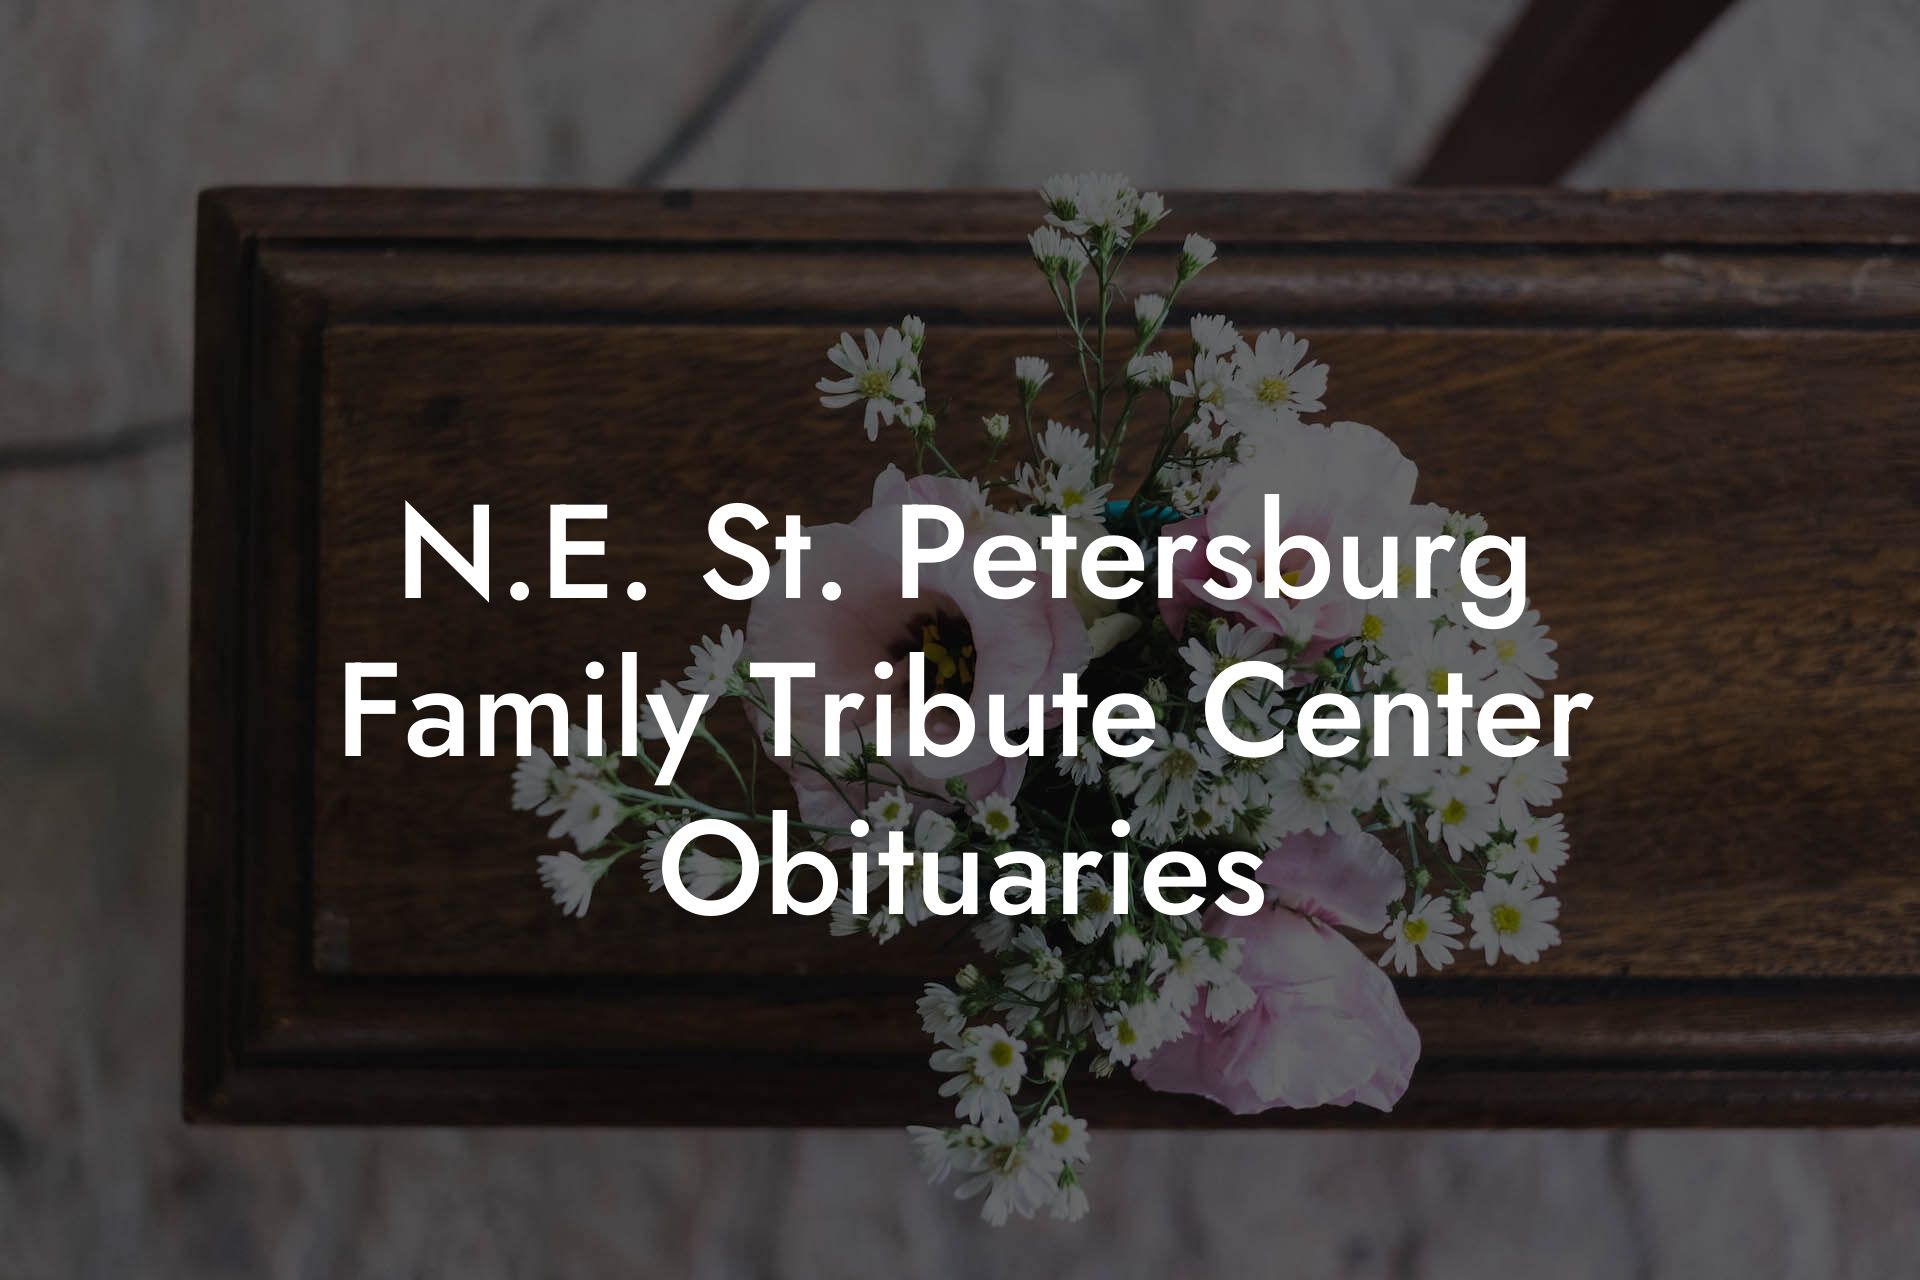 N.E. St. Petersburg Family Tribute Center Obituaries